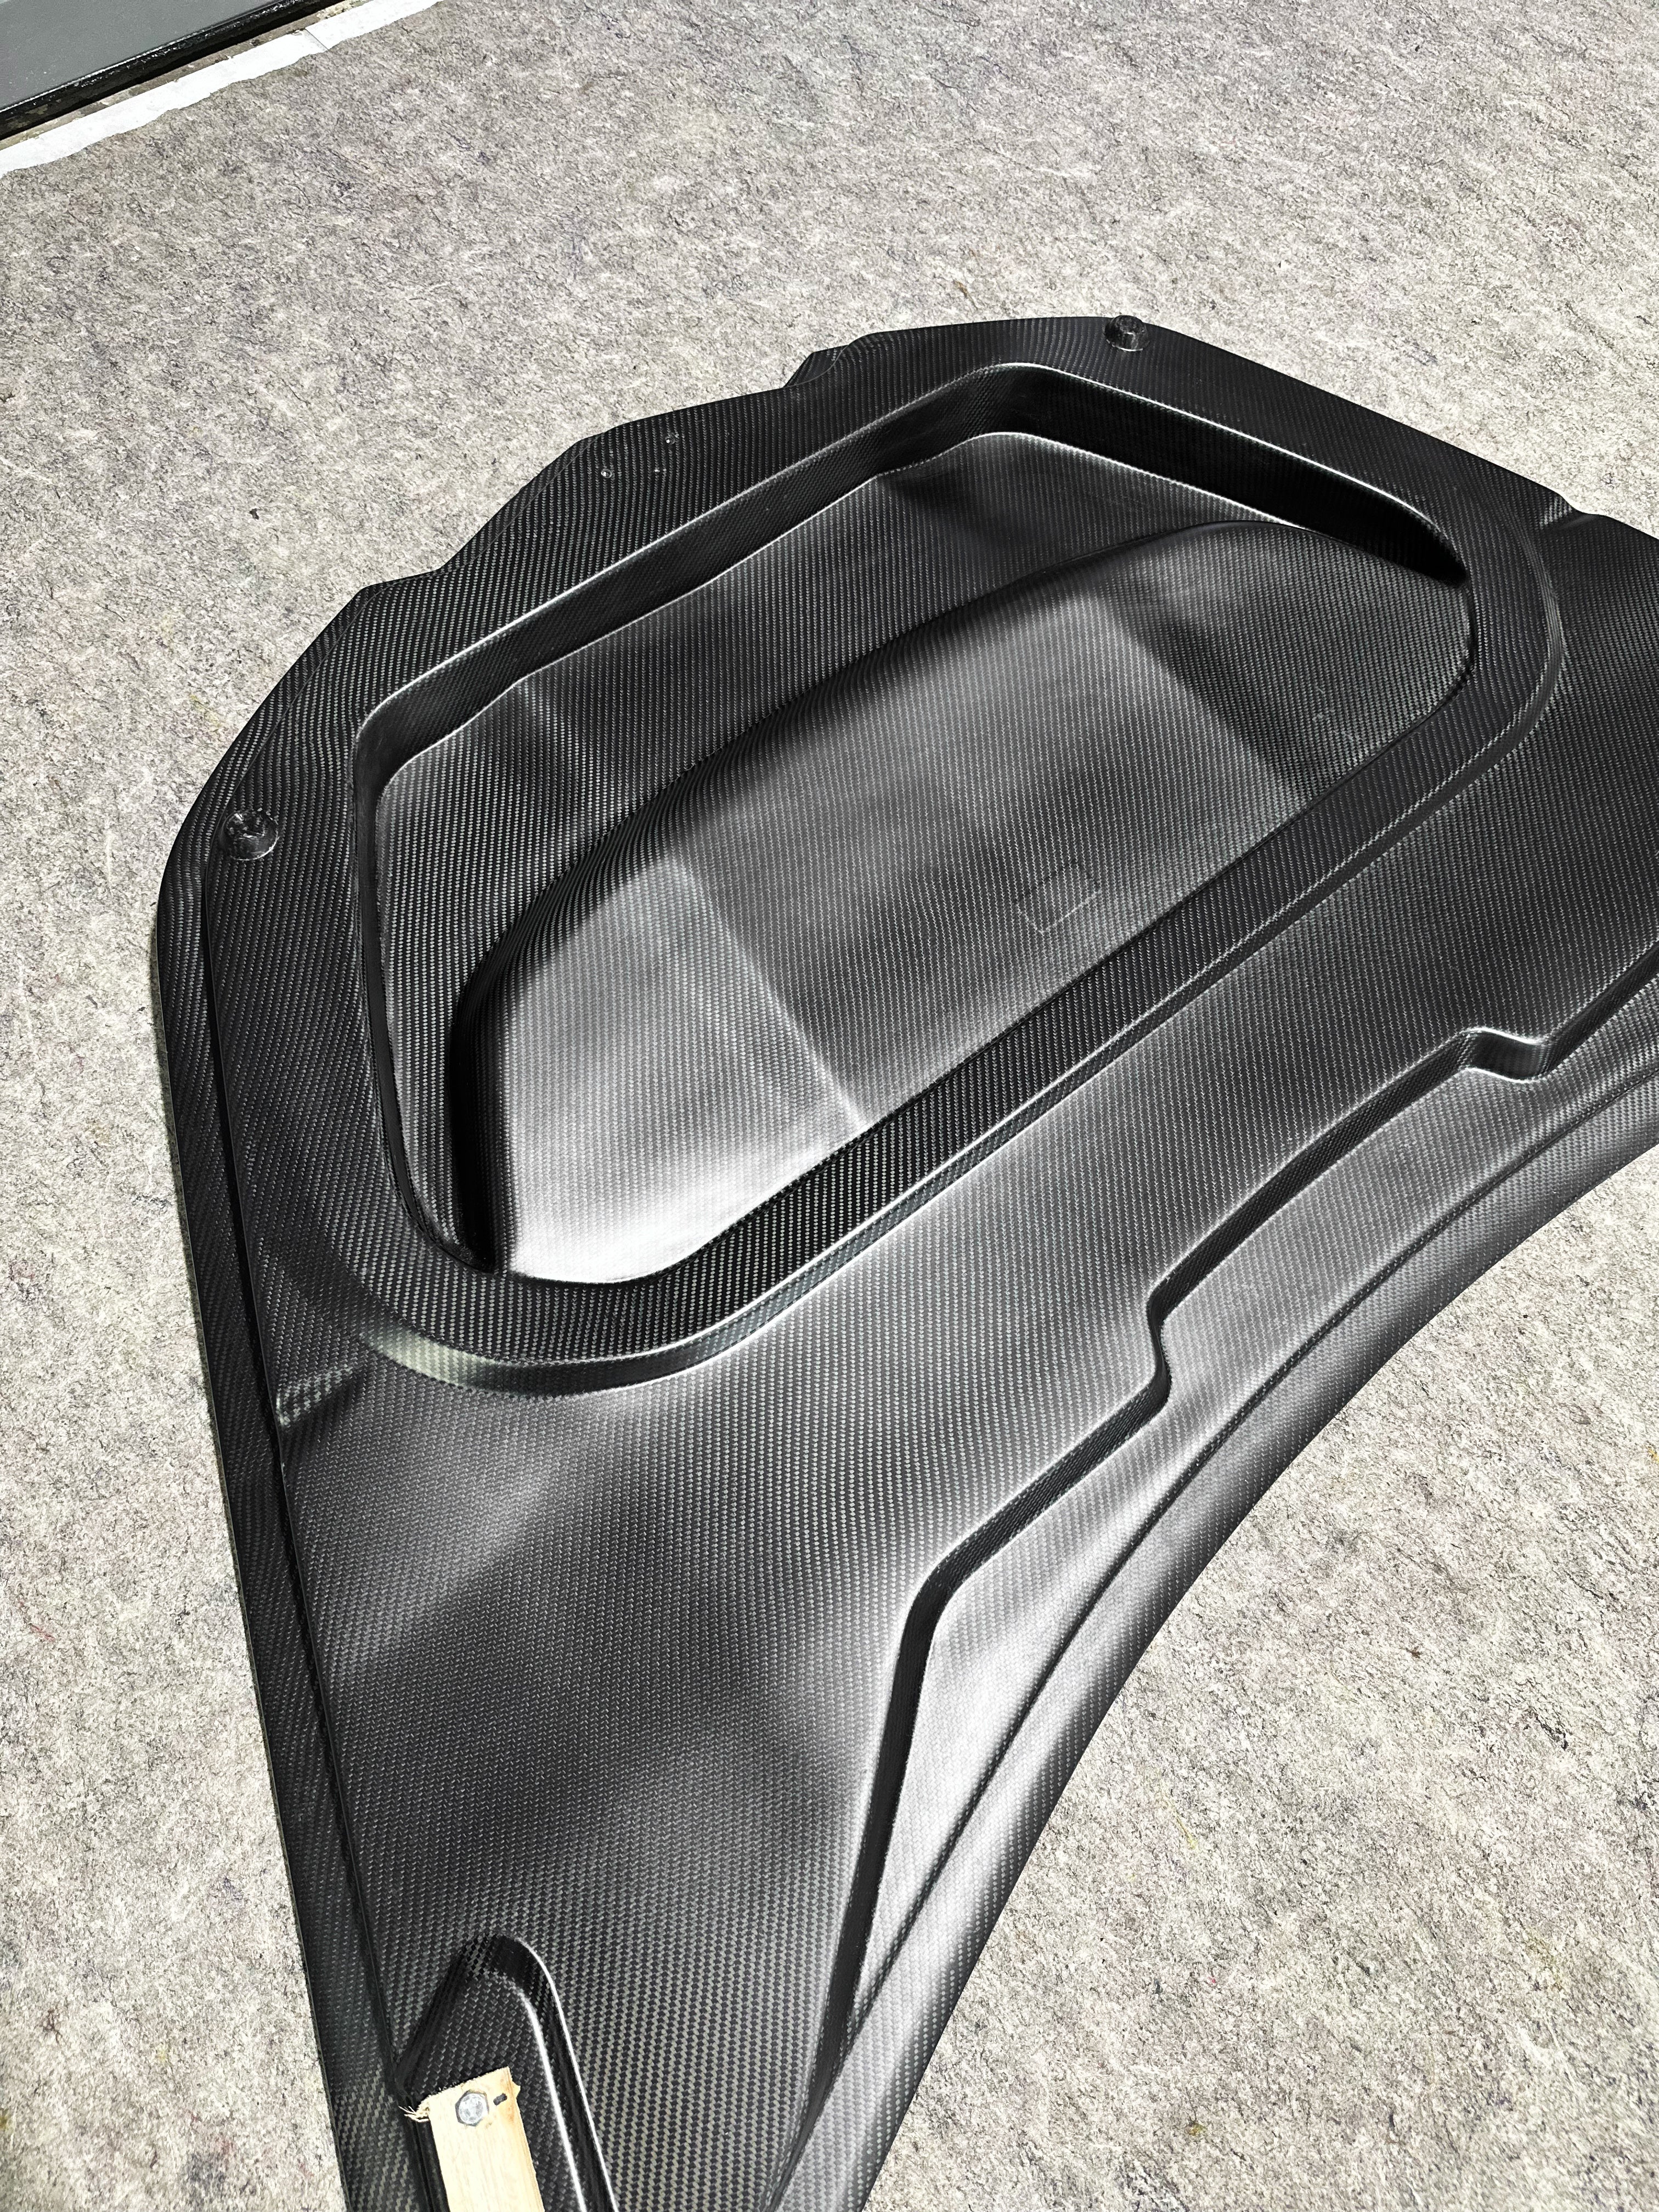 Aero Republic Carbon Fiber Hood Bonnet ST Style for Corvette C8 aftermarket parts 